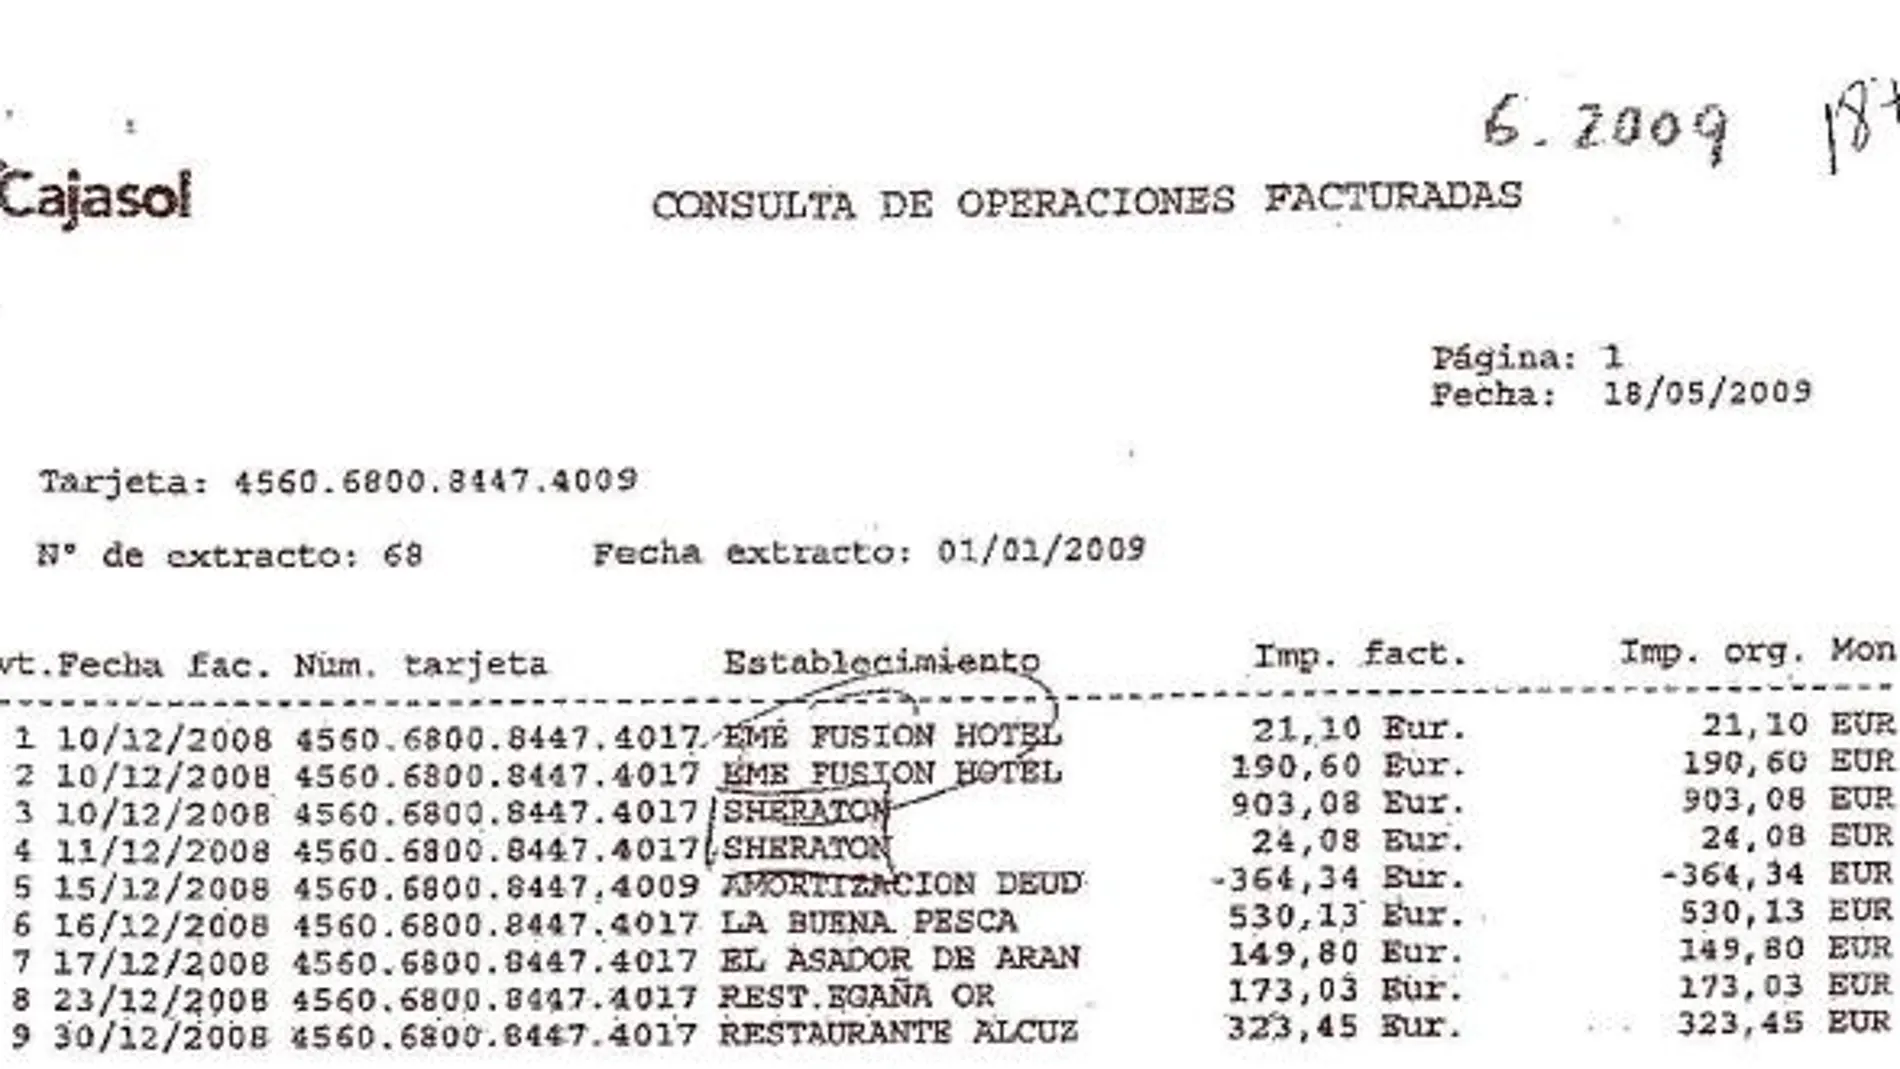 Extracto de los gastos con la Visa de Mercasevilla a cargo de Mellet en diciembre de 2008